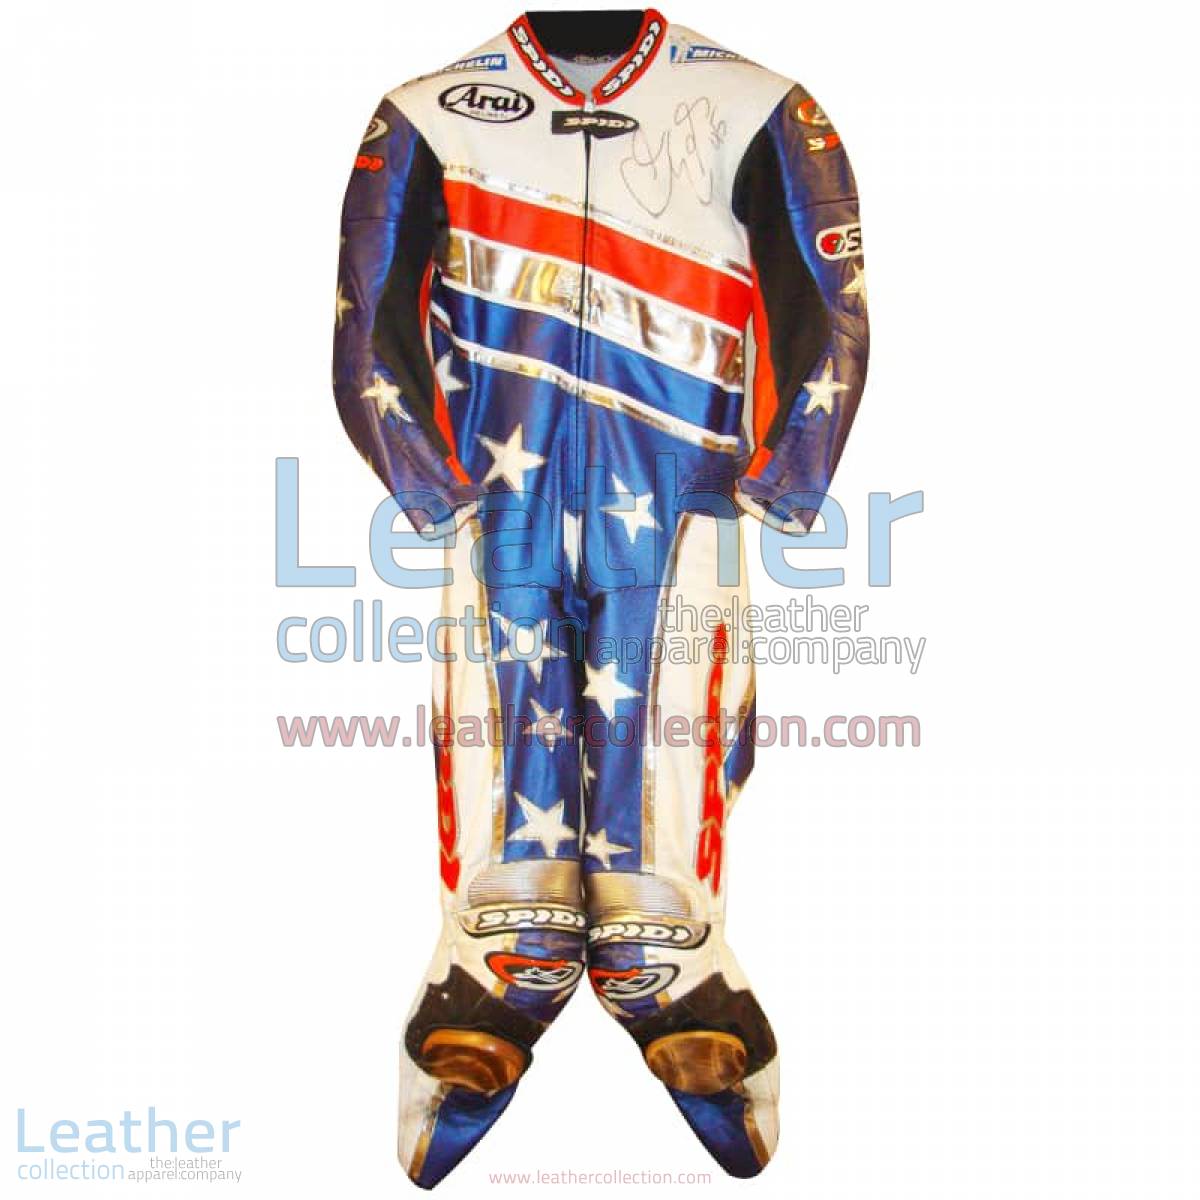 Colin Edwards Aprilia Leathers 2003 MotoGP Pre-season